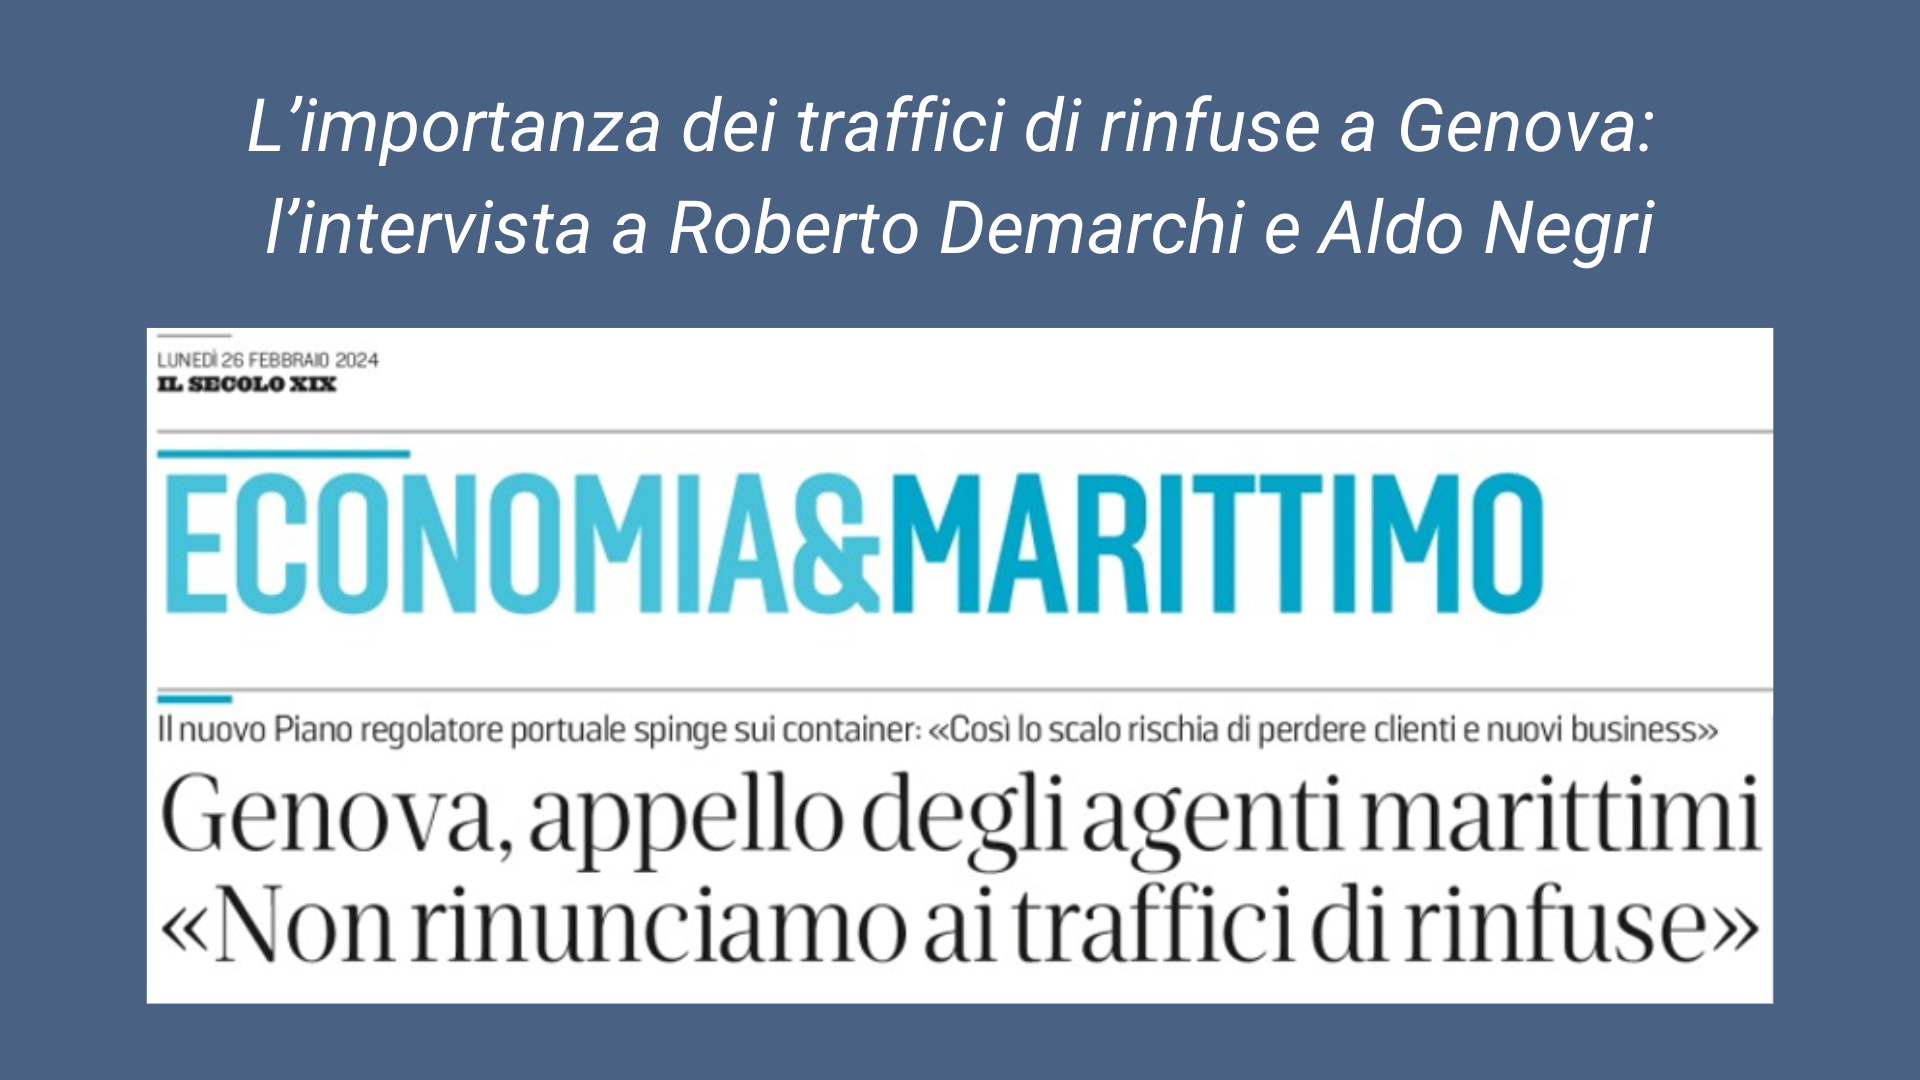 Assagenti sottolinea l'importanza dei traffici di rinfuse a Genova: l’intervista a Demarchi e Negri